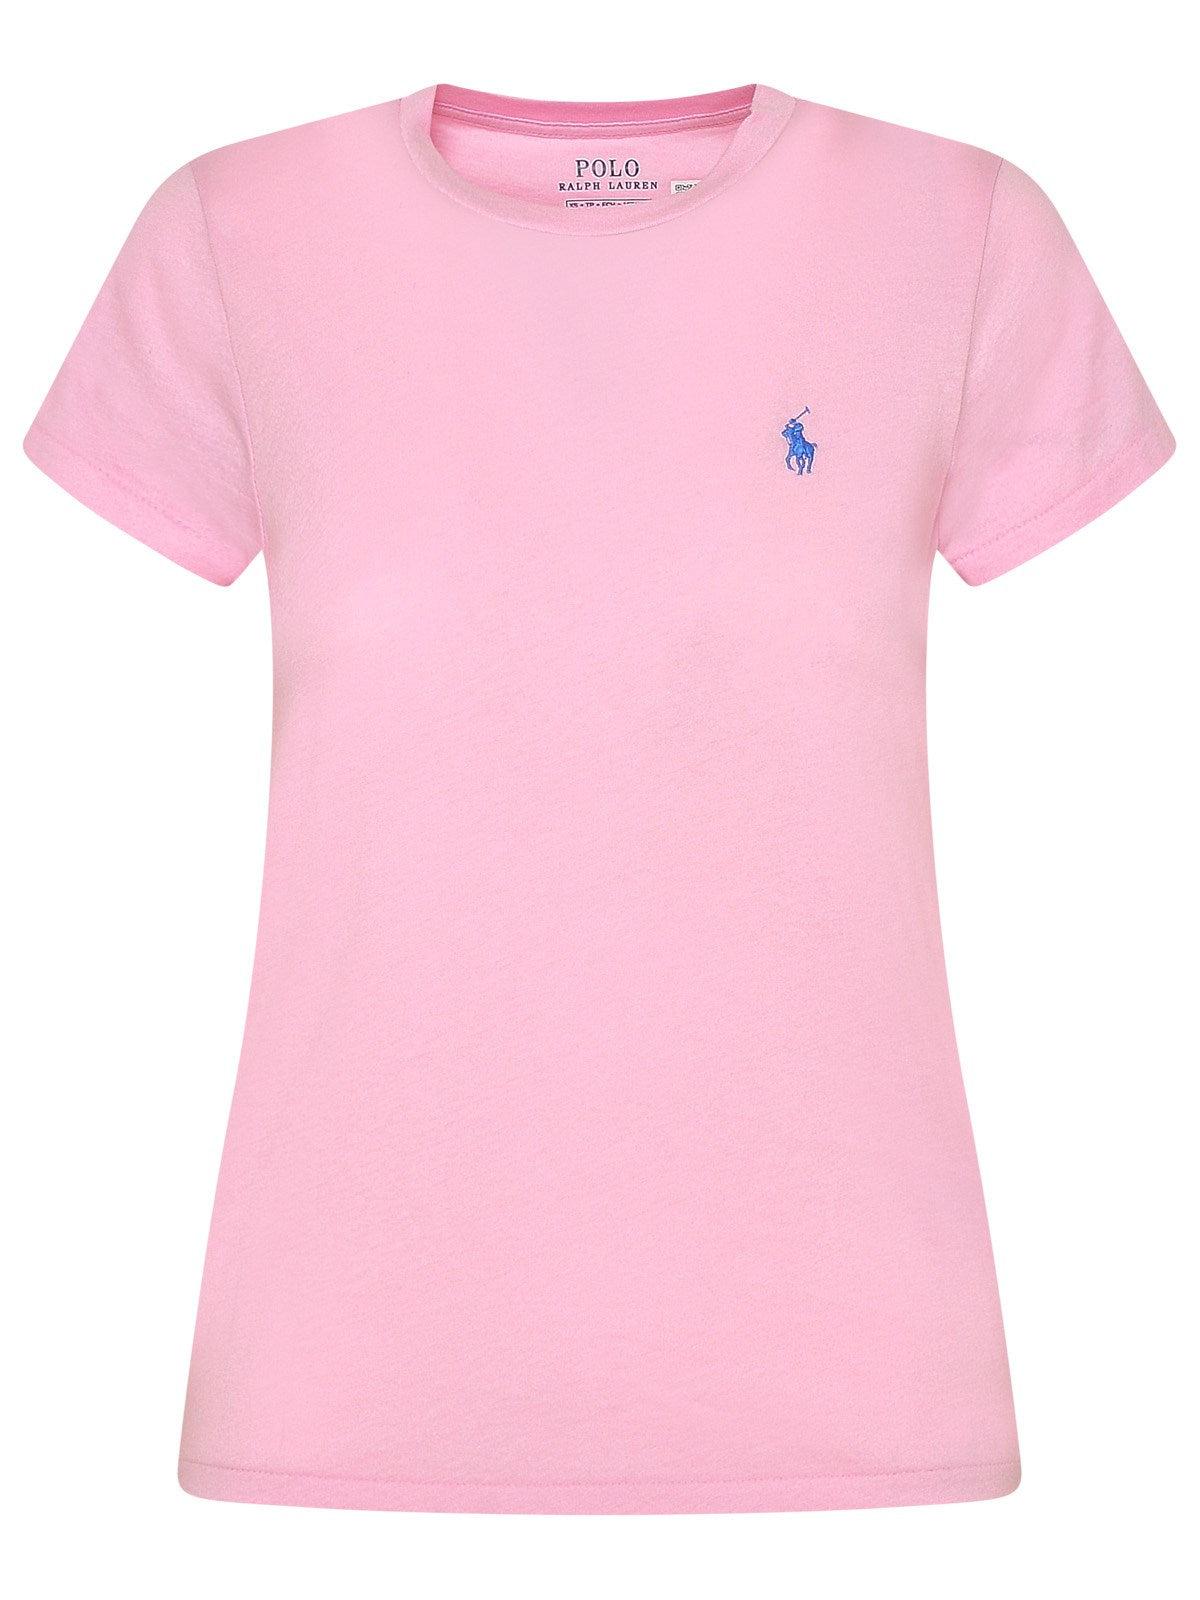 Polo Ralph Lauren Pink Cotton T-shirt | Lyst